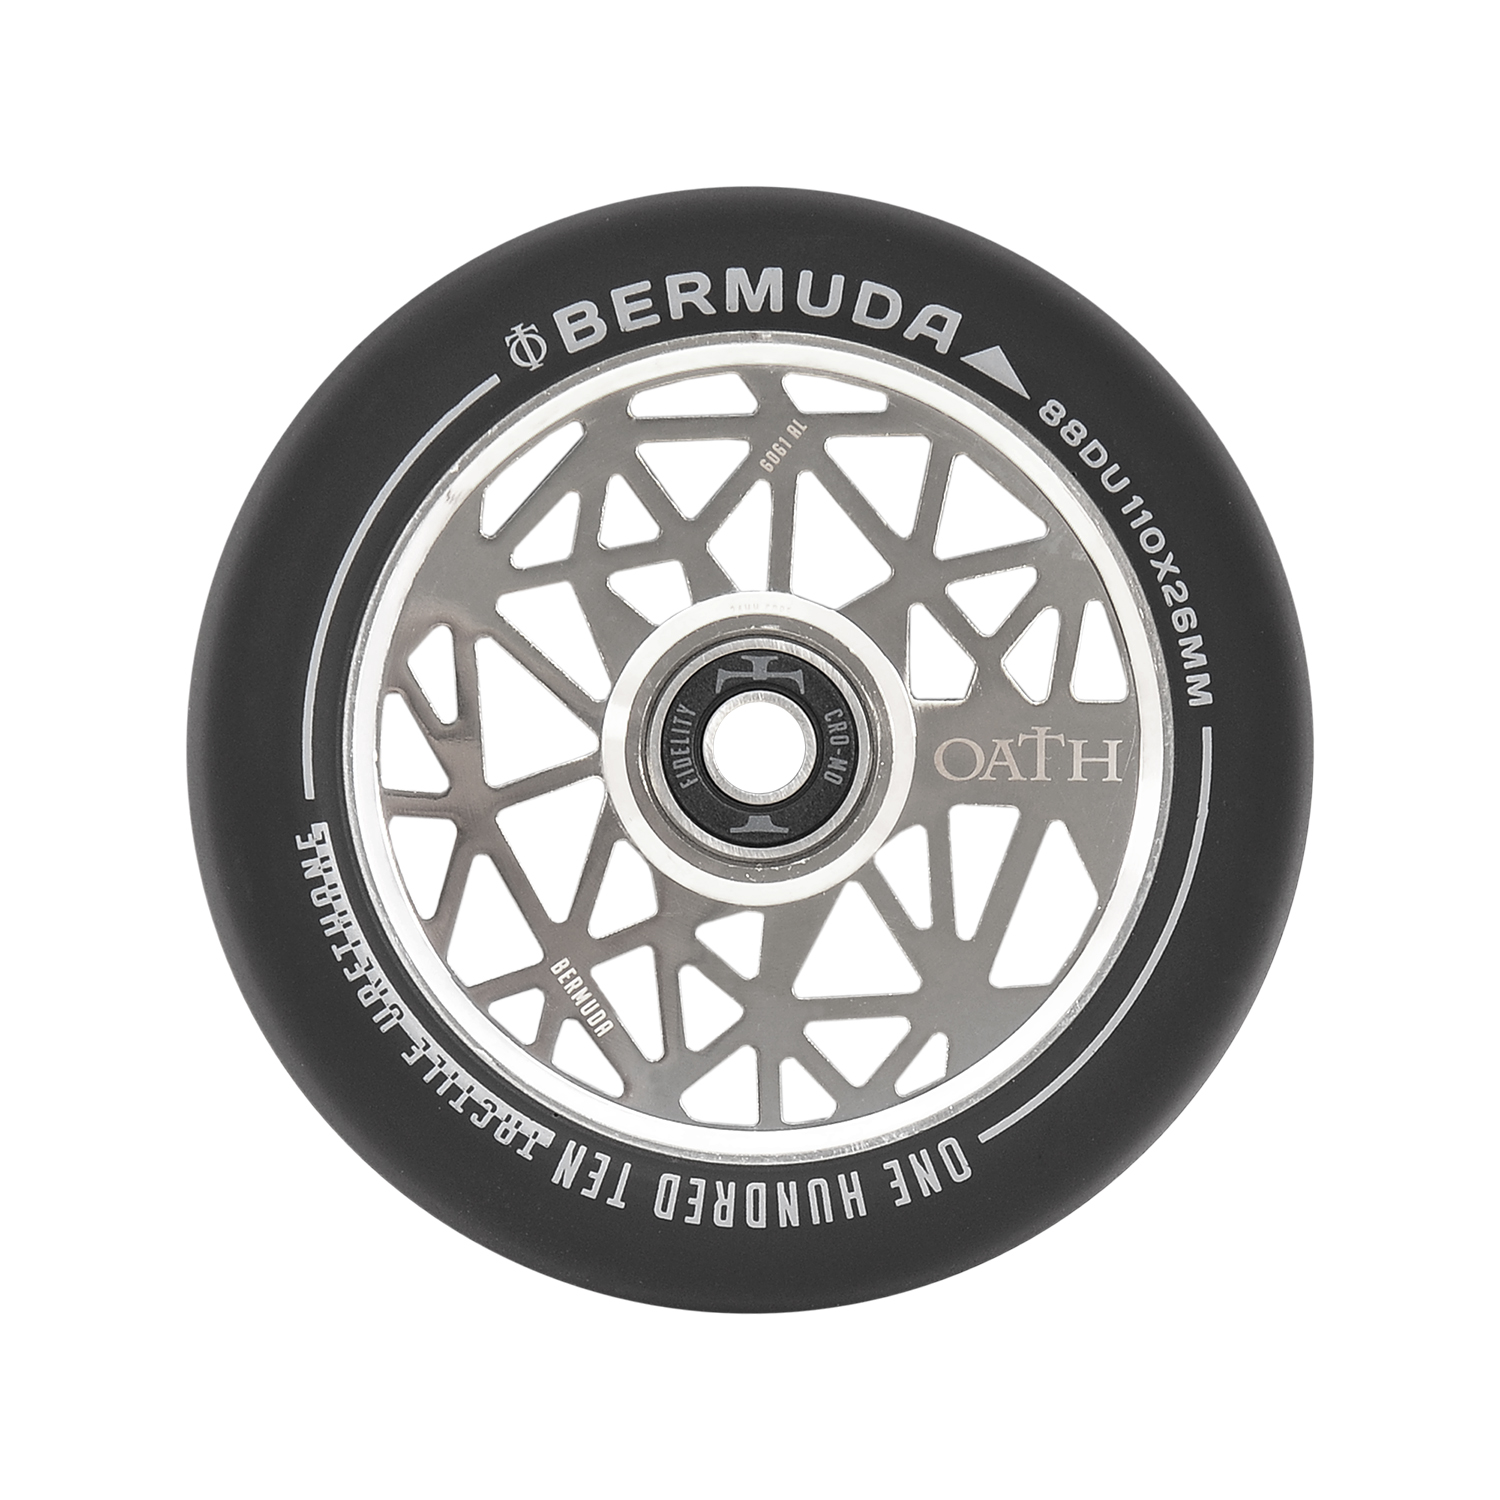 Oath Bermuda 110mm Stunt Scooter Wheels